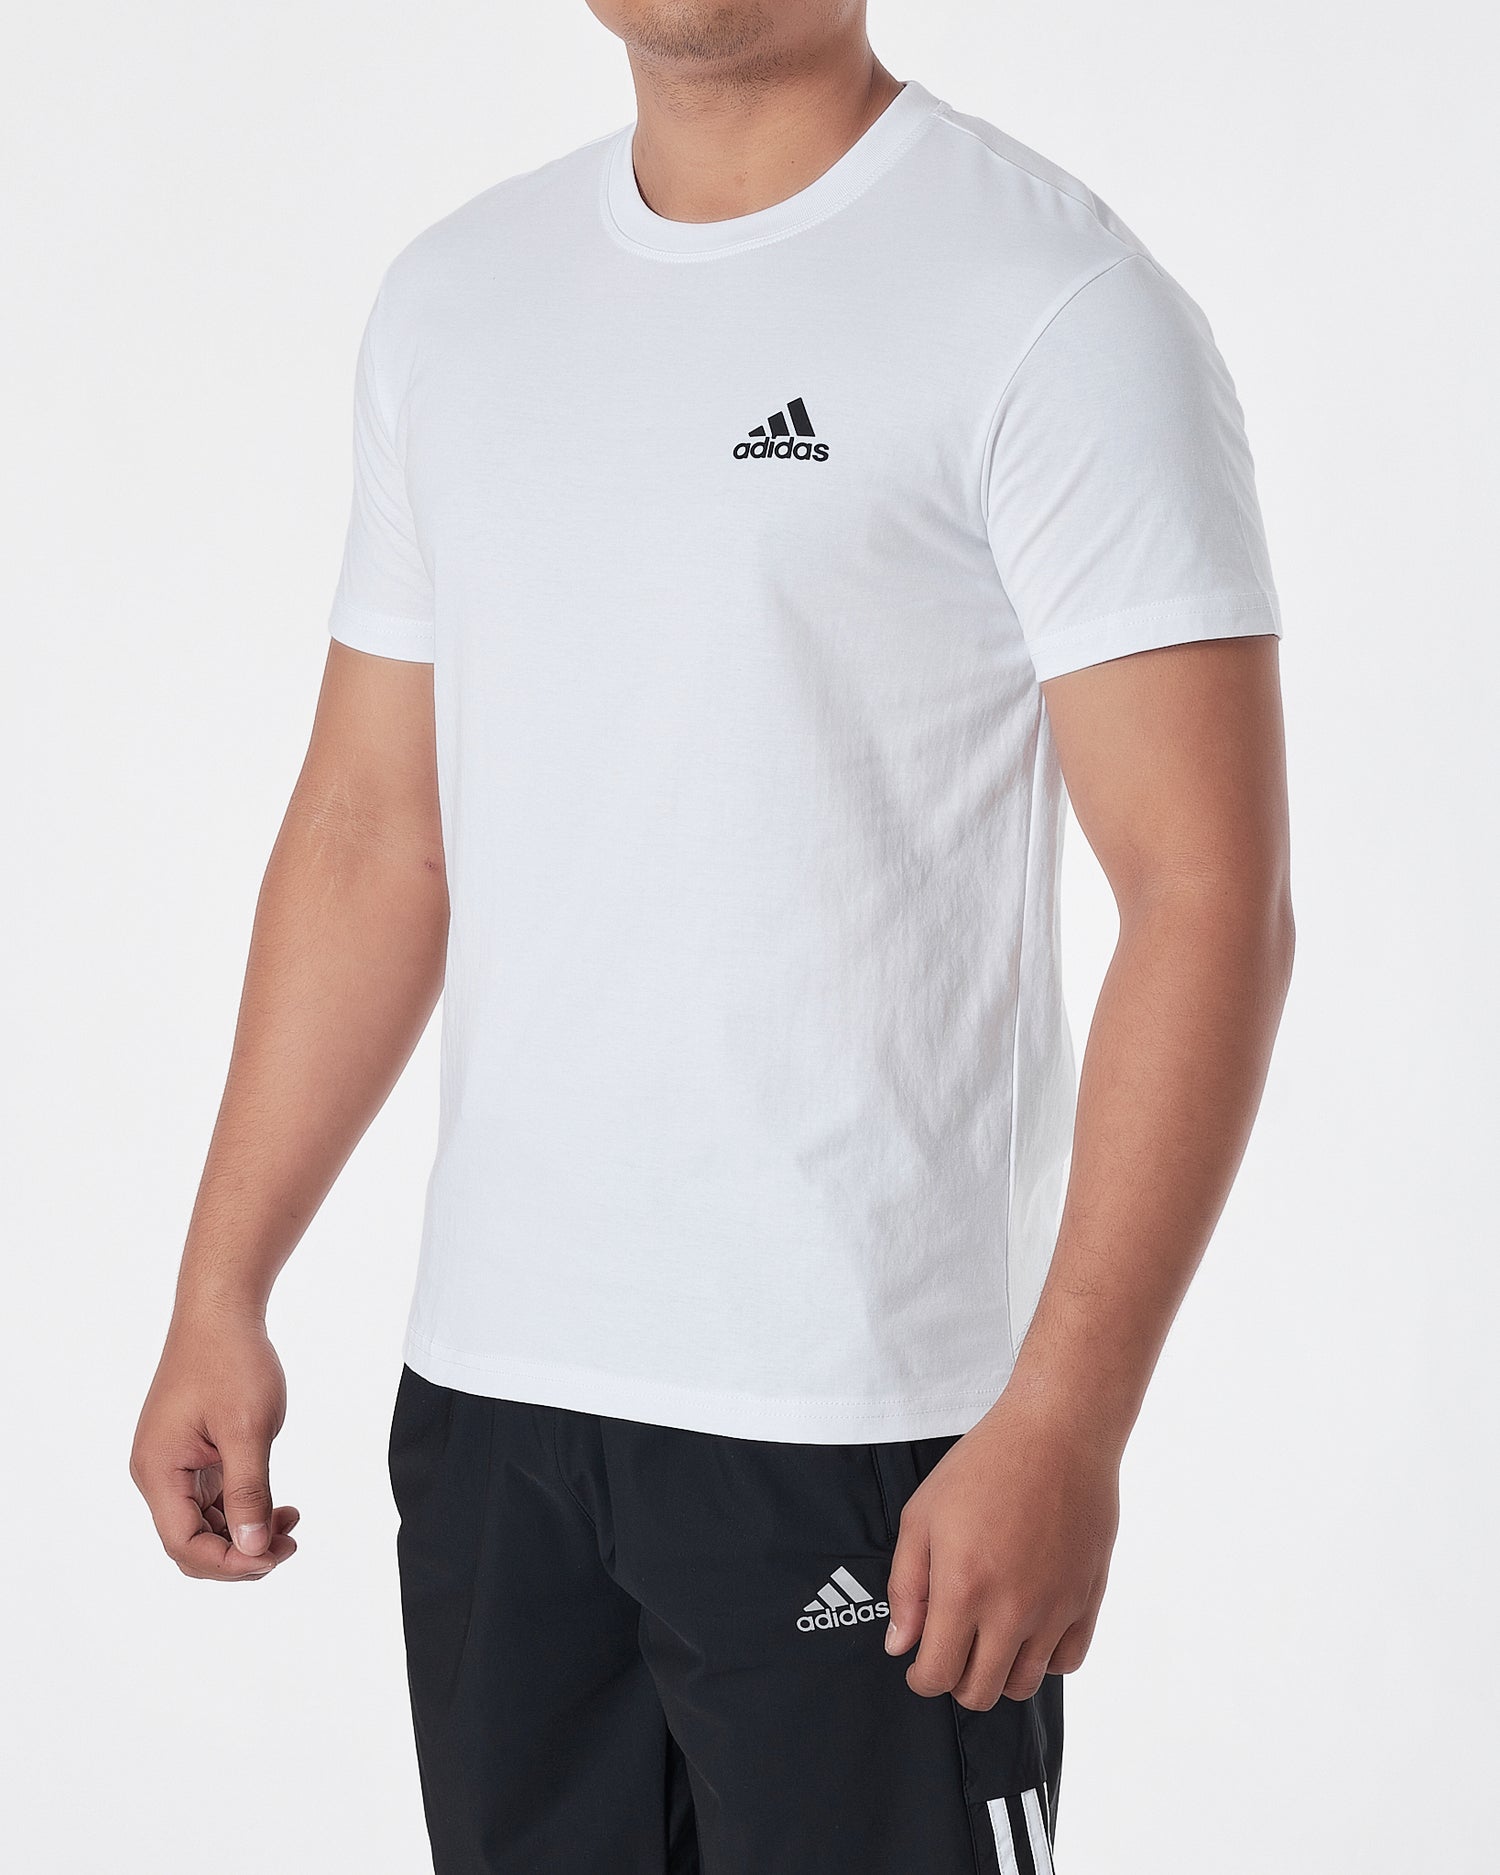 ADI Shoulder Striped Men White Sport T-Shirt 14.50